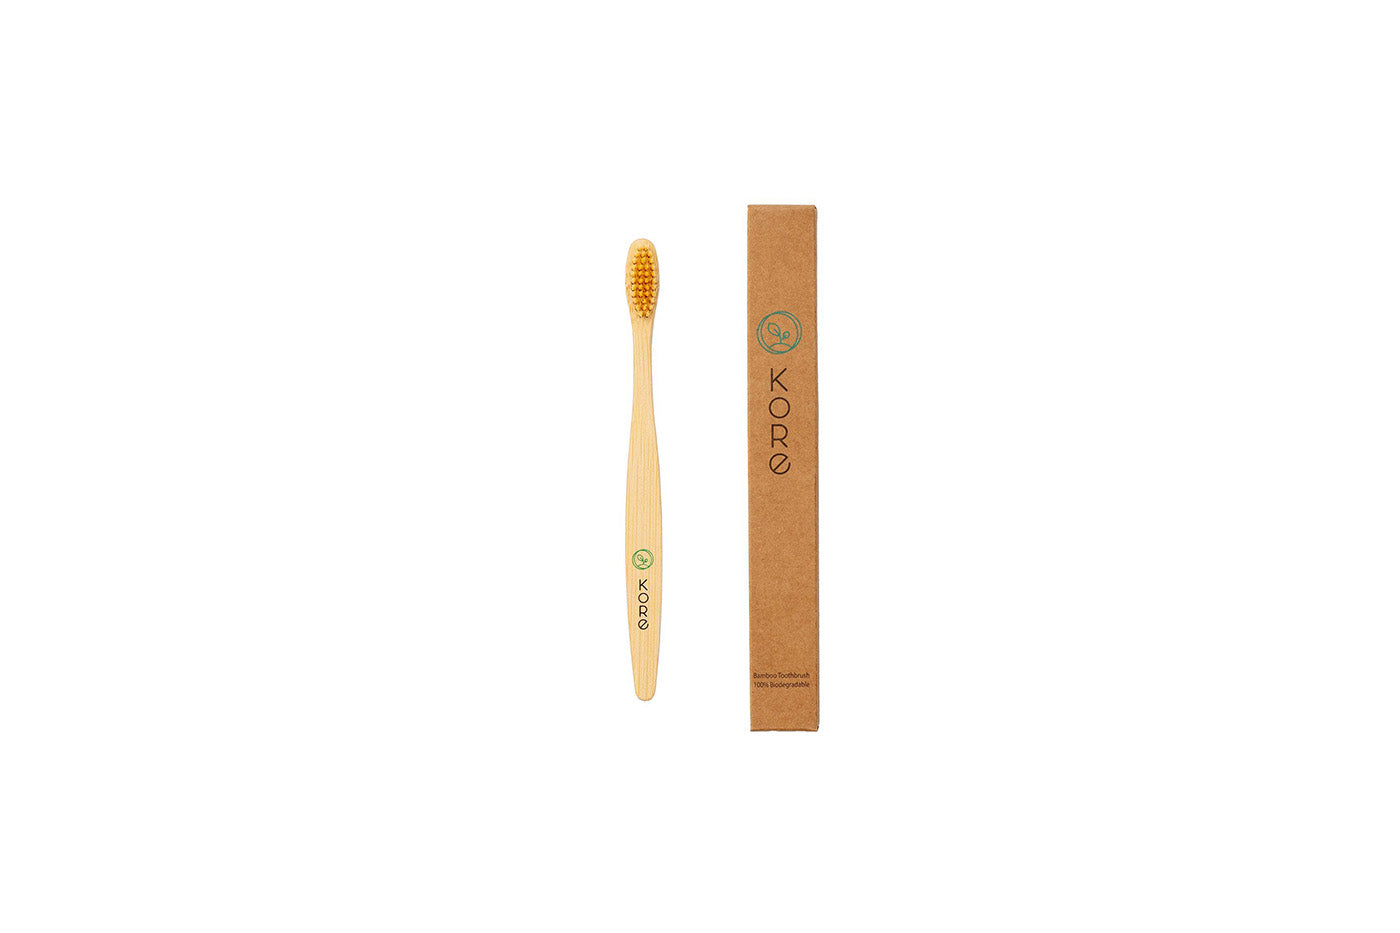 Kore 100 % Biodegradable Bamboo Toothbrush